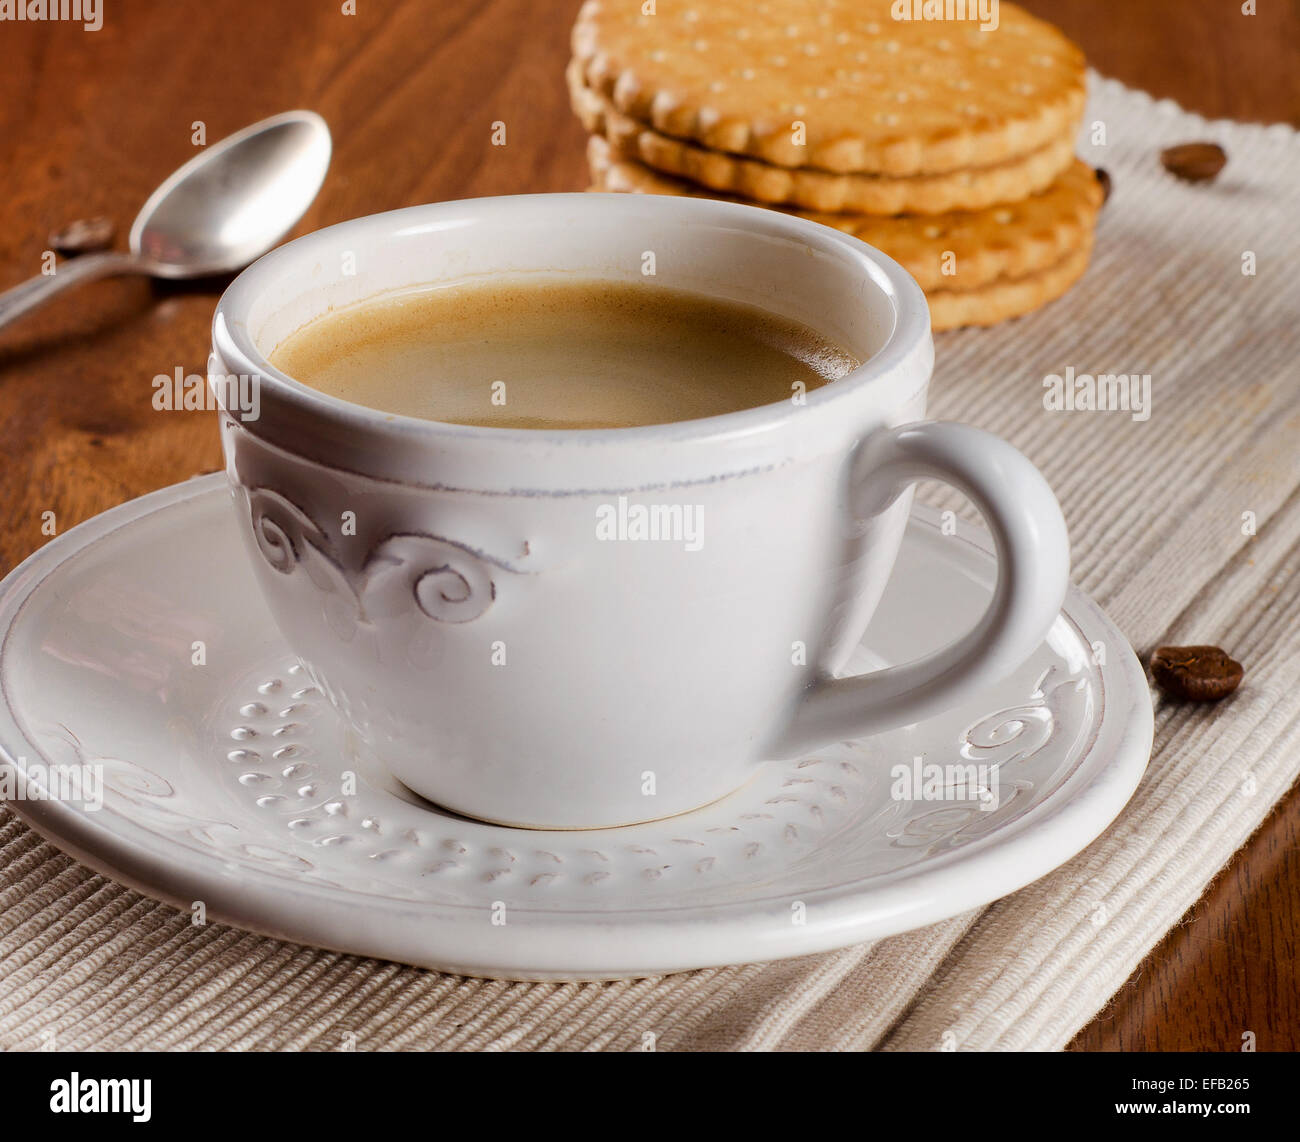 Tasse à café et cookies sur table en bois. Selective focus Banque D'Images